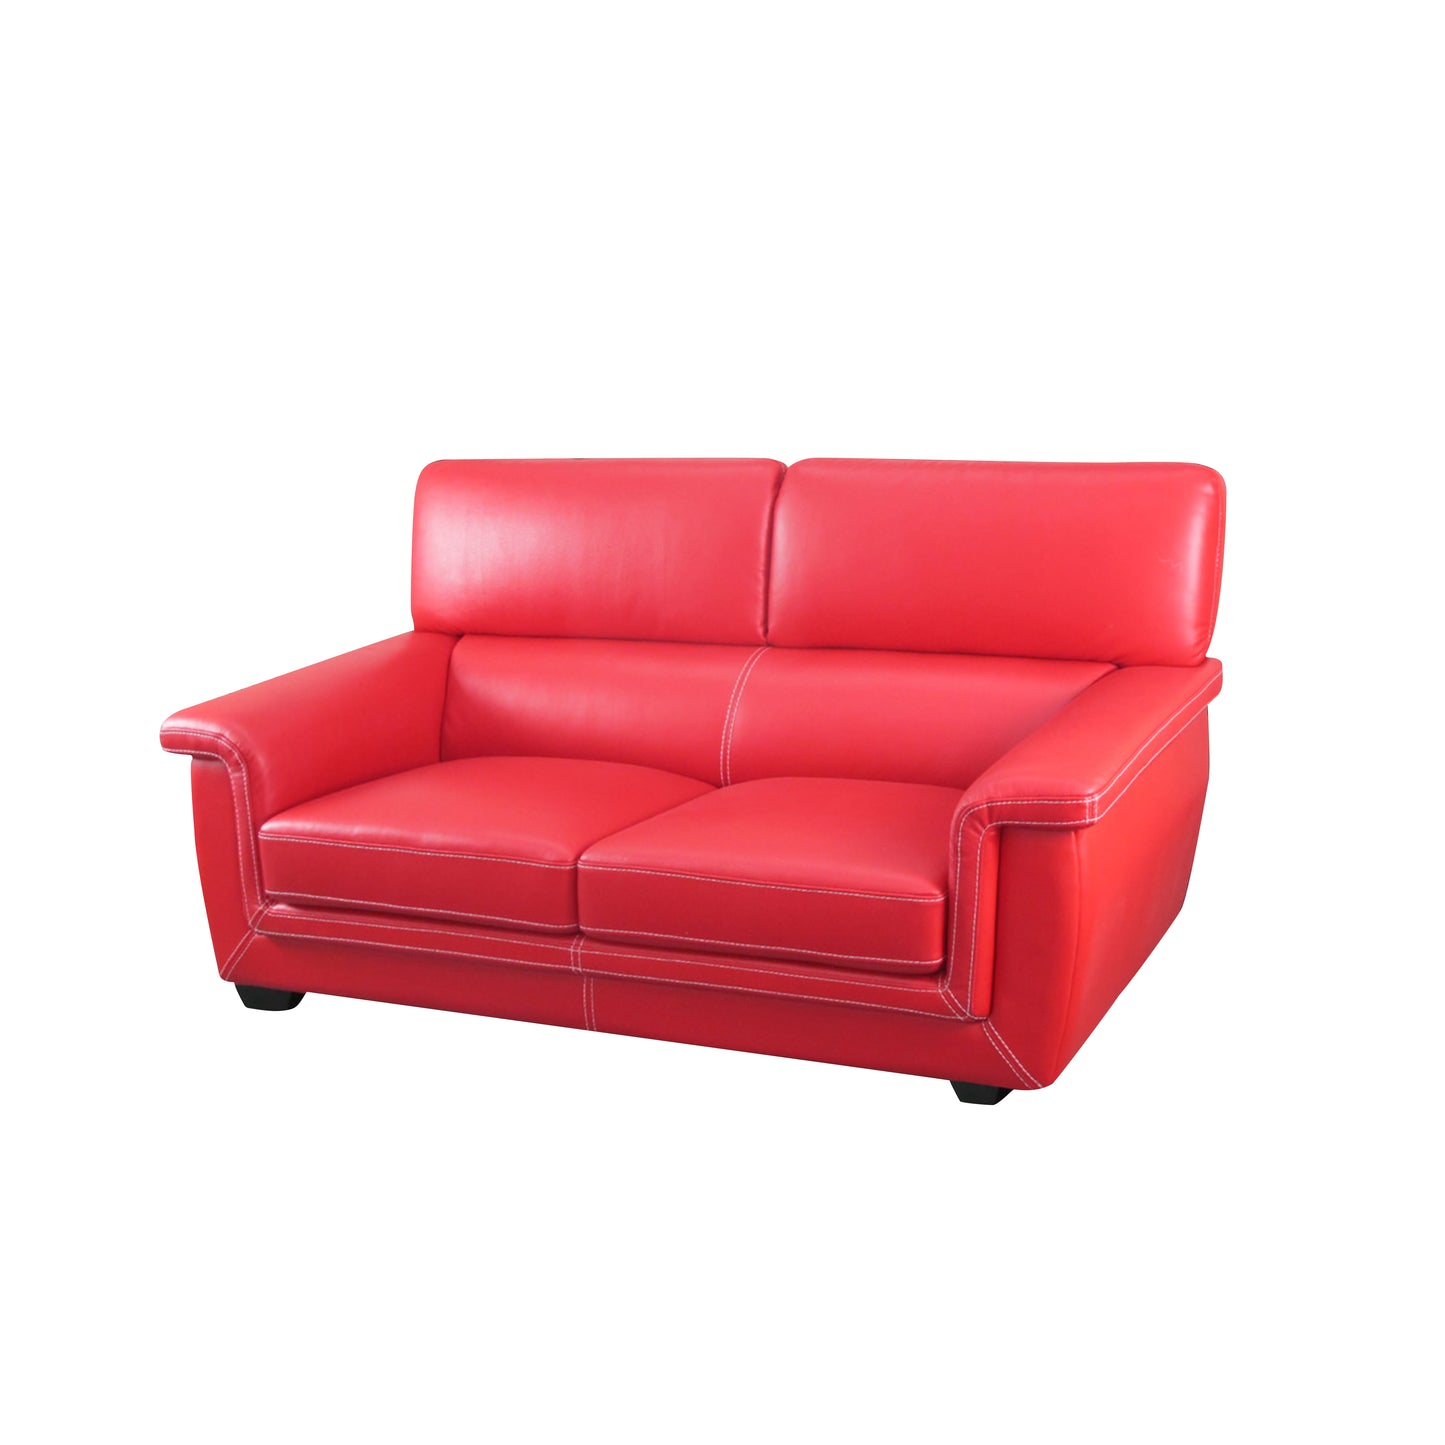 Deluxe series sofa 013118